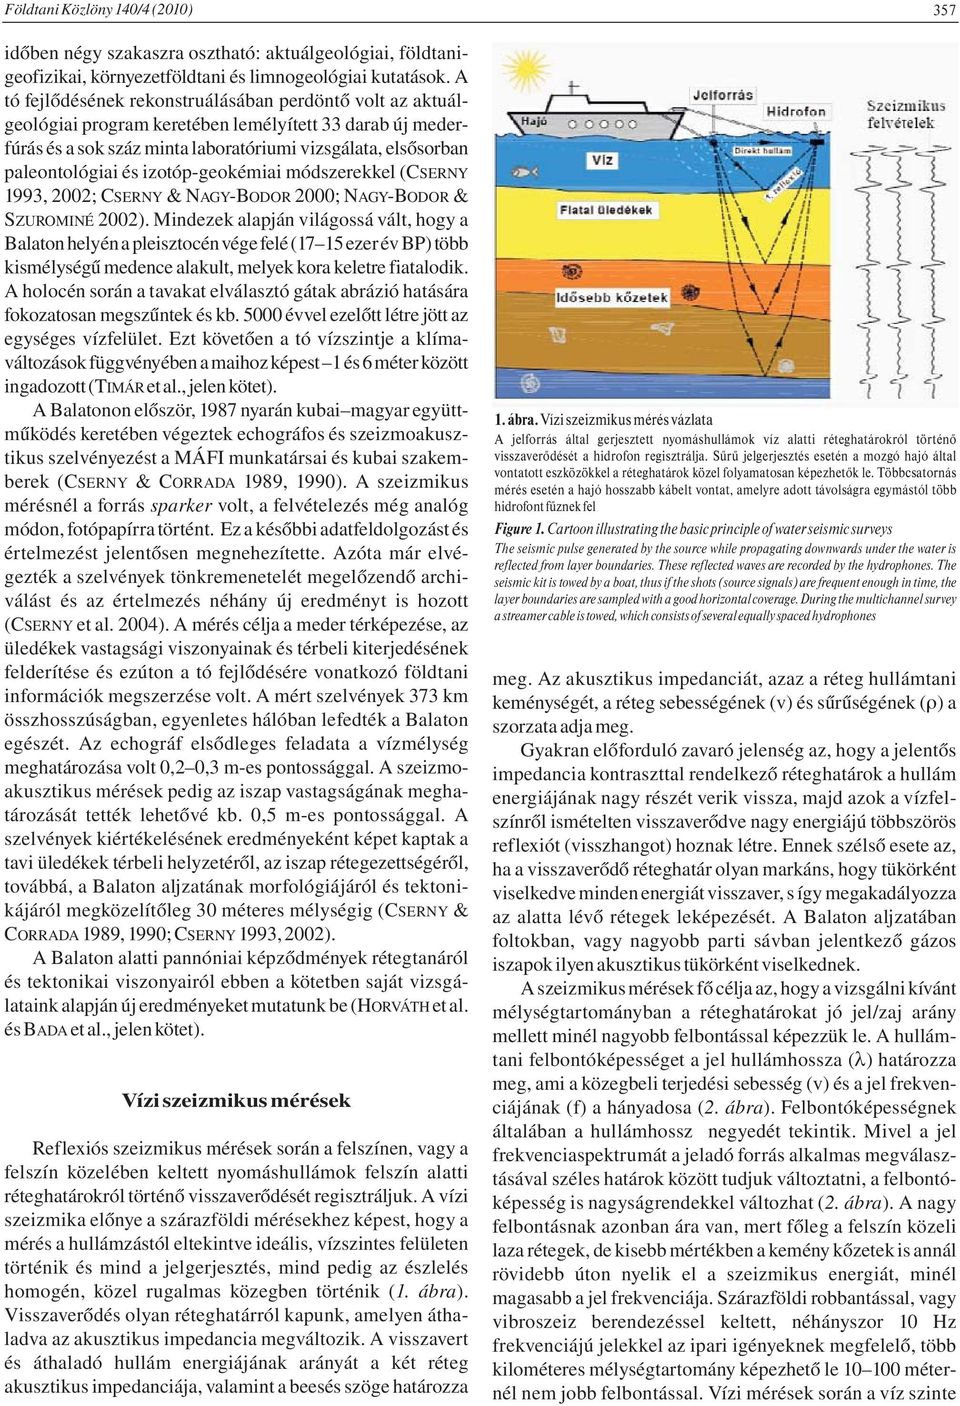 izotóp-geokémiai módszerekkel (CSERNY 1993, 2002; CSERNY & NAGY-BODOR 2000; NAGY-BODOR & SZUROMINÉ 2002).